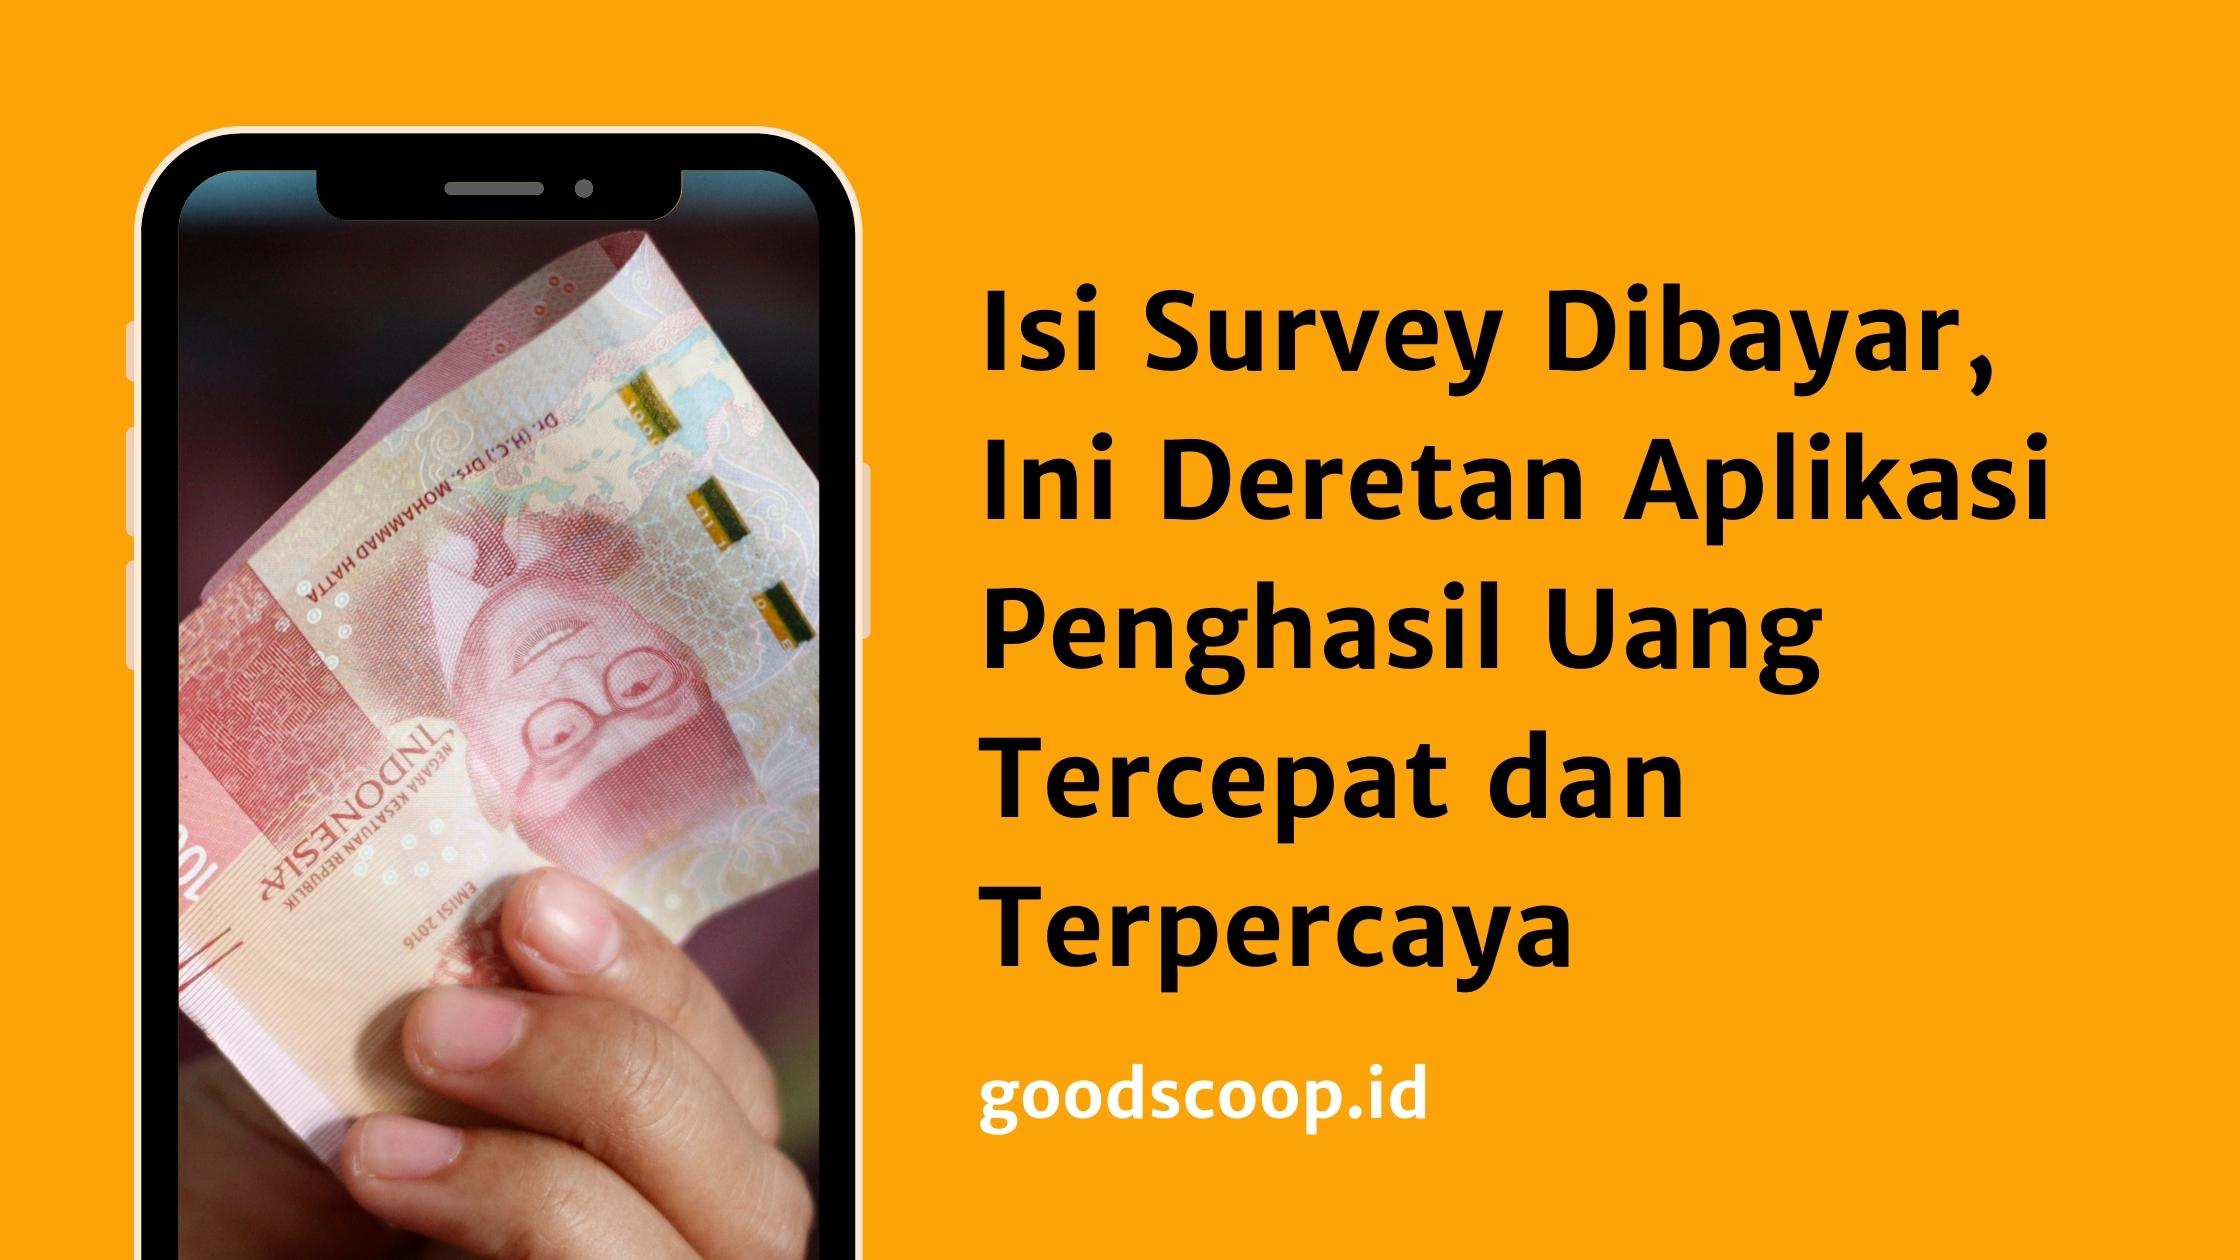 Aplikasi Penghasil Uang dengan Isi Survey Dibayar, Download Disini